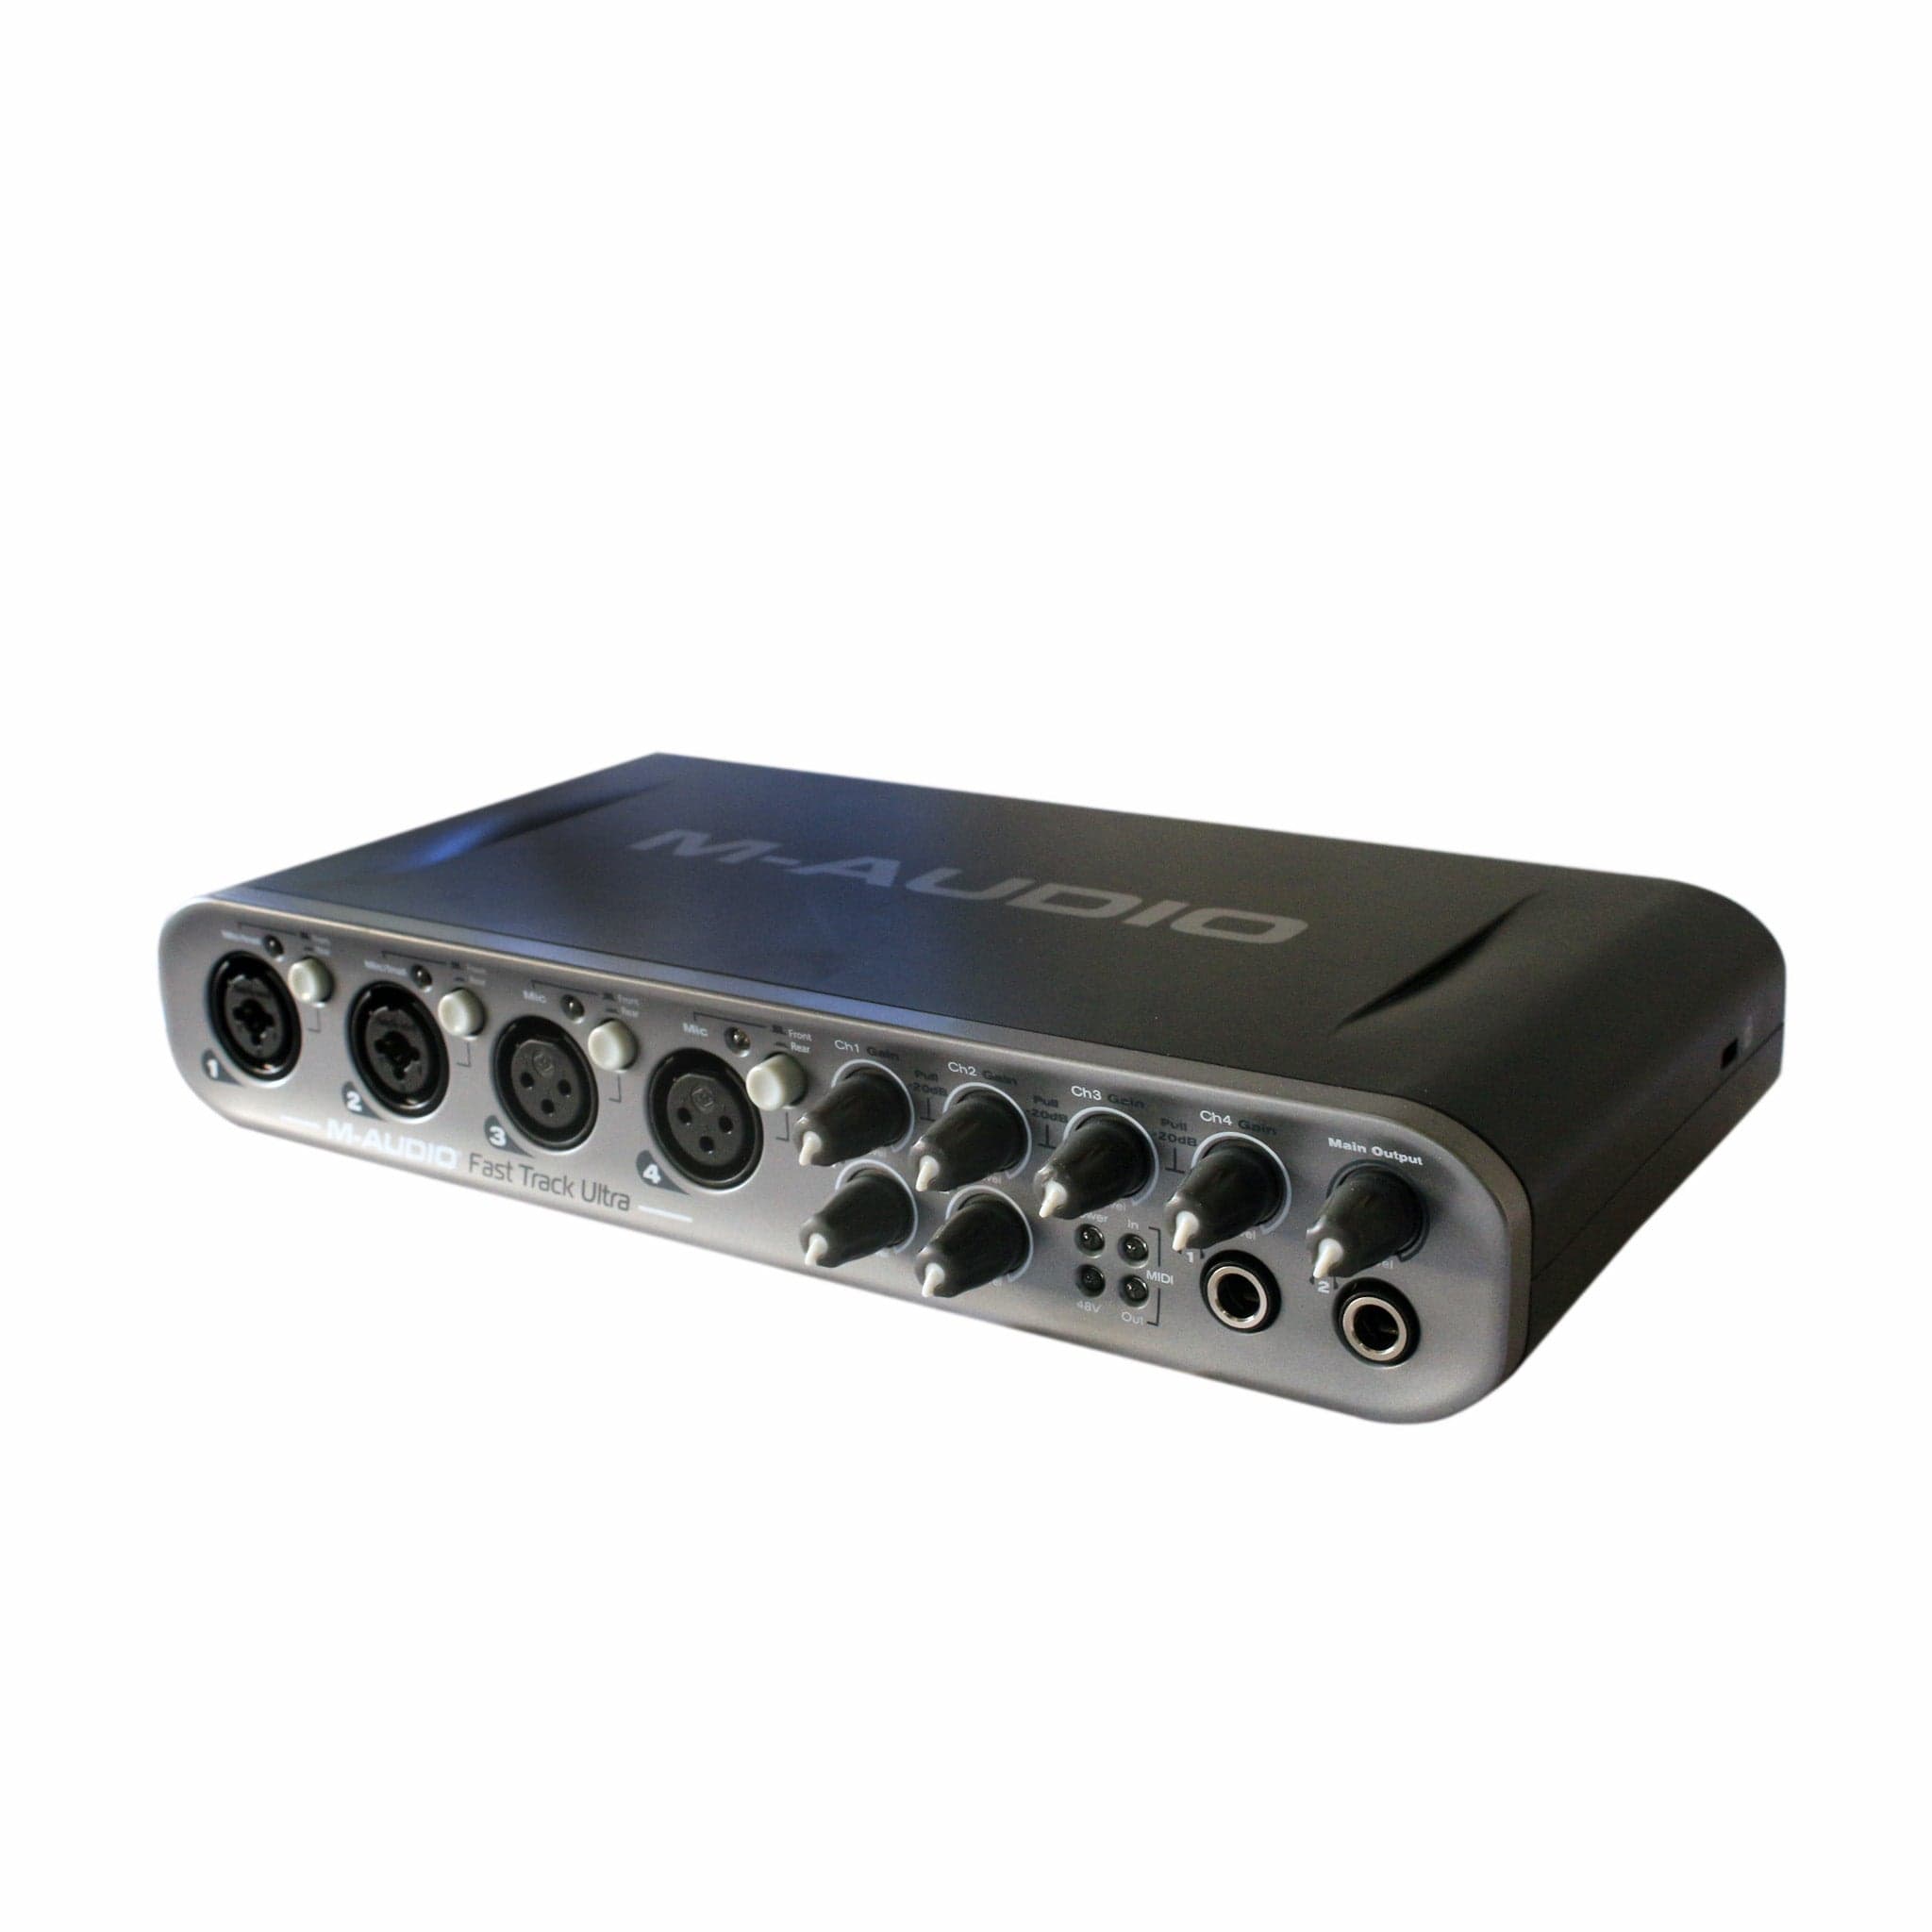 M-audio – Carte Son Professionnelle Fast Track, Microphone, 2 Entrées Et 2  Sorties, Interface Usb 2.0, Pour Performance En Direct - AliExpress